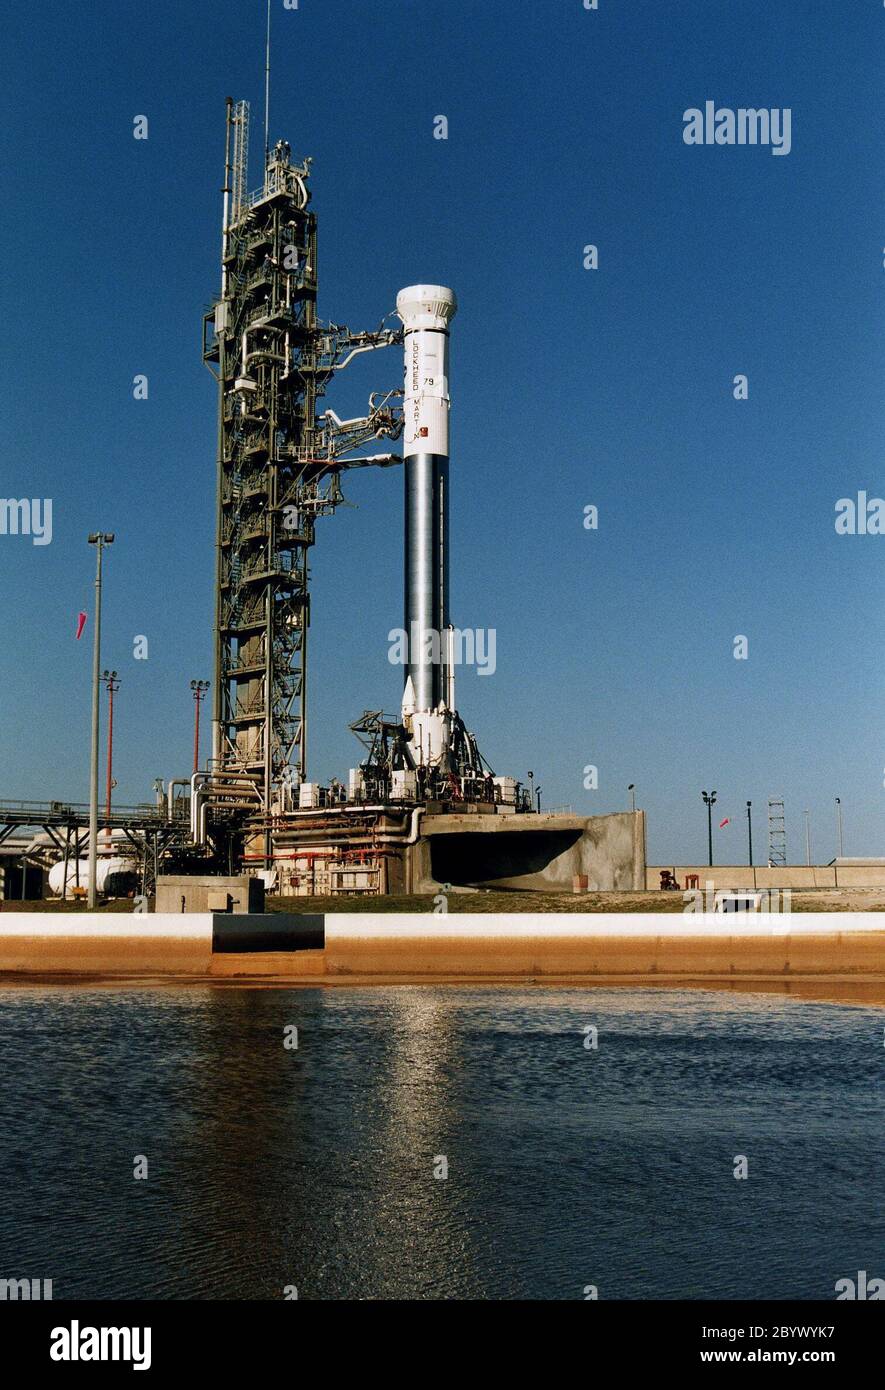 Le véhicule de lancement consommable Lockheed Martin Atlas 1 (AC-79) qui transportera le satellite MÉTÉOROLOGIQUE avancé GOO-K subit un essai de prélancement critique avec sa tour de service mobile retirée. La répétition de la robe humide est un test de prélancement majeur conçu pour démontrer, en partie, l'état de préparation au lancement du véhicule et de l'équipement de soutien au lancement. L'AC-79 sera le lancement final d'une fusée Atlas 1, un dérivé de l'Atlas Centaur original qui a eu son premier lancement réussi pour la NASA en 1963. Les lancements futurs de satellites géostationnaires opérationnels environnementaux (GOS) dans la série actuelle Wil Banque D'Images